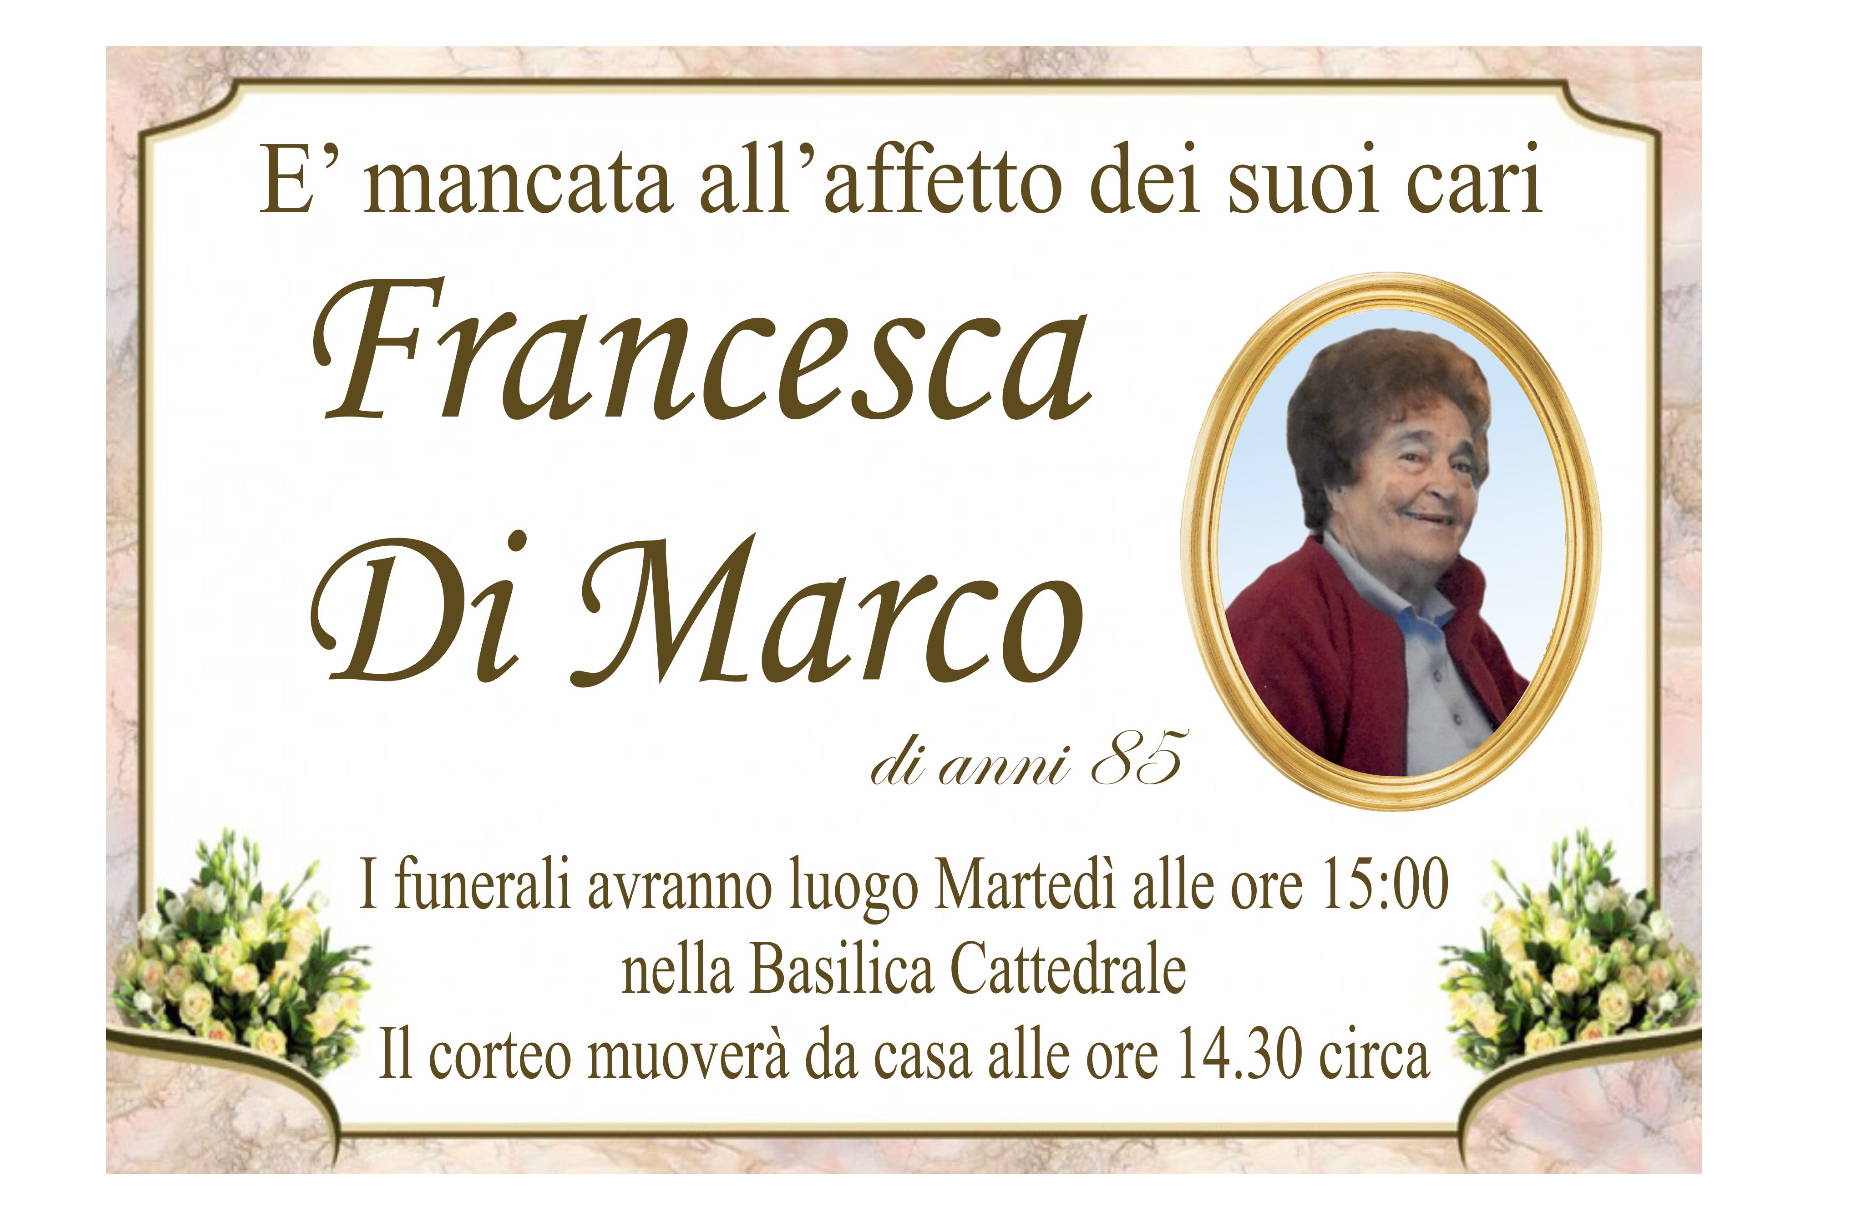 Francesca Di Marco